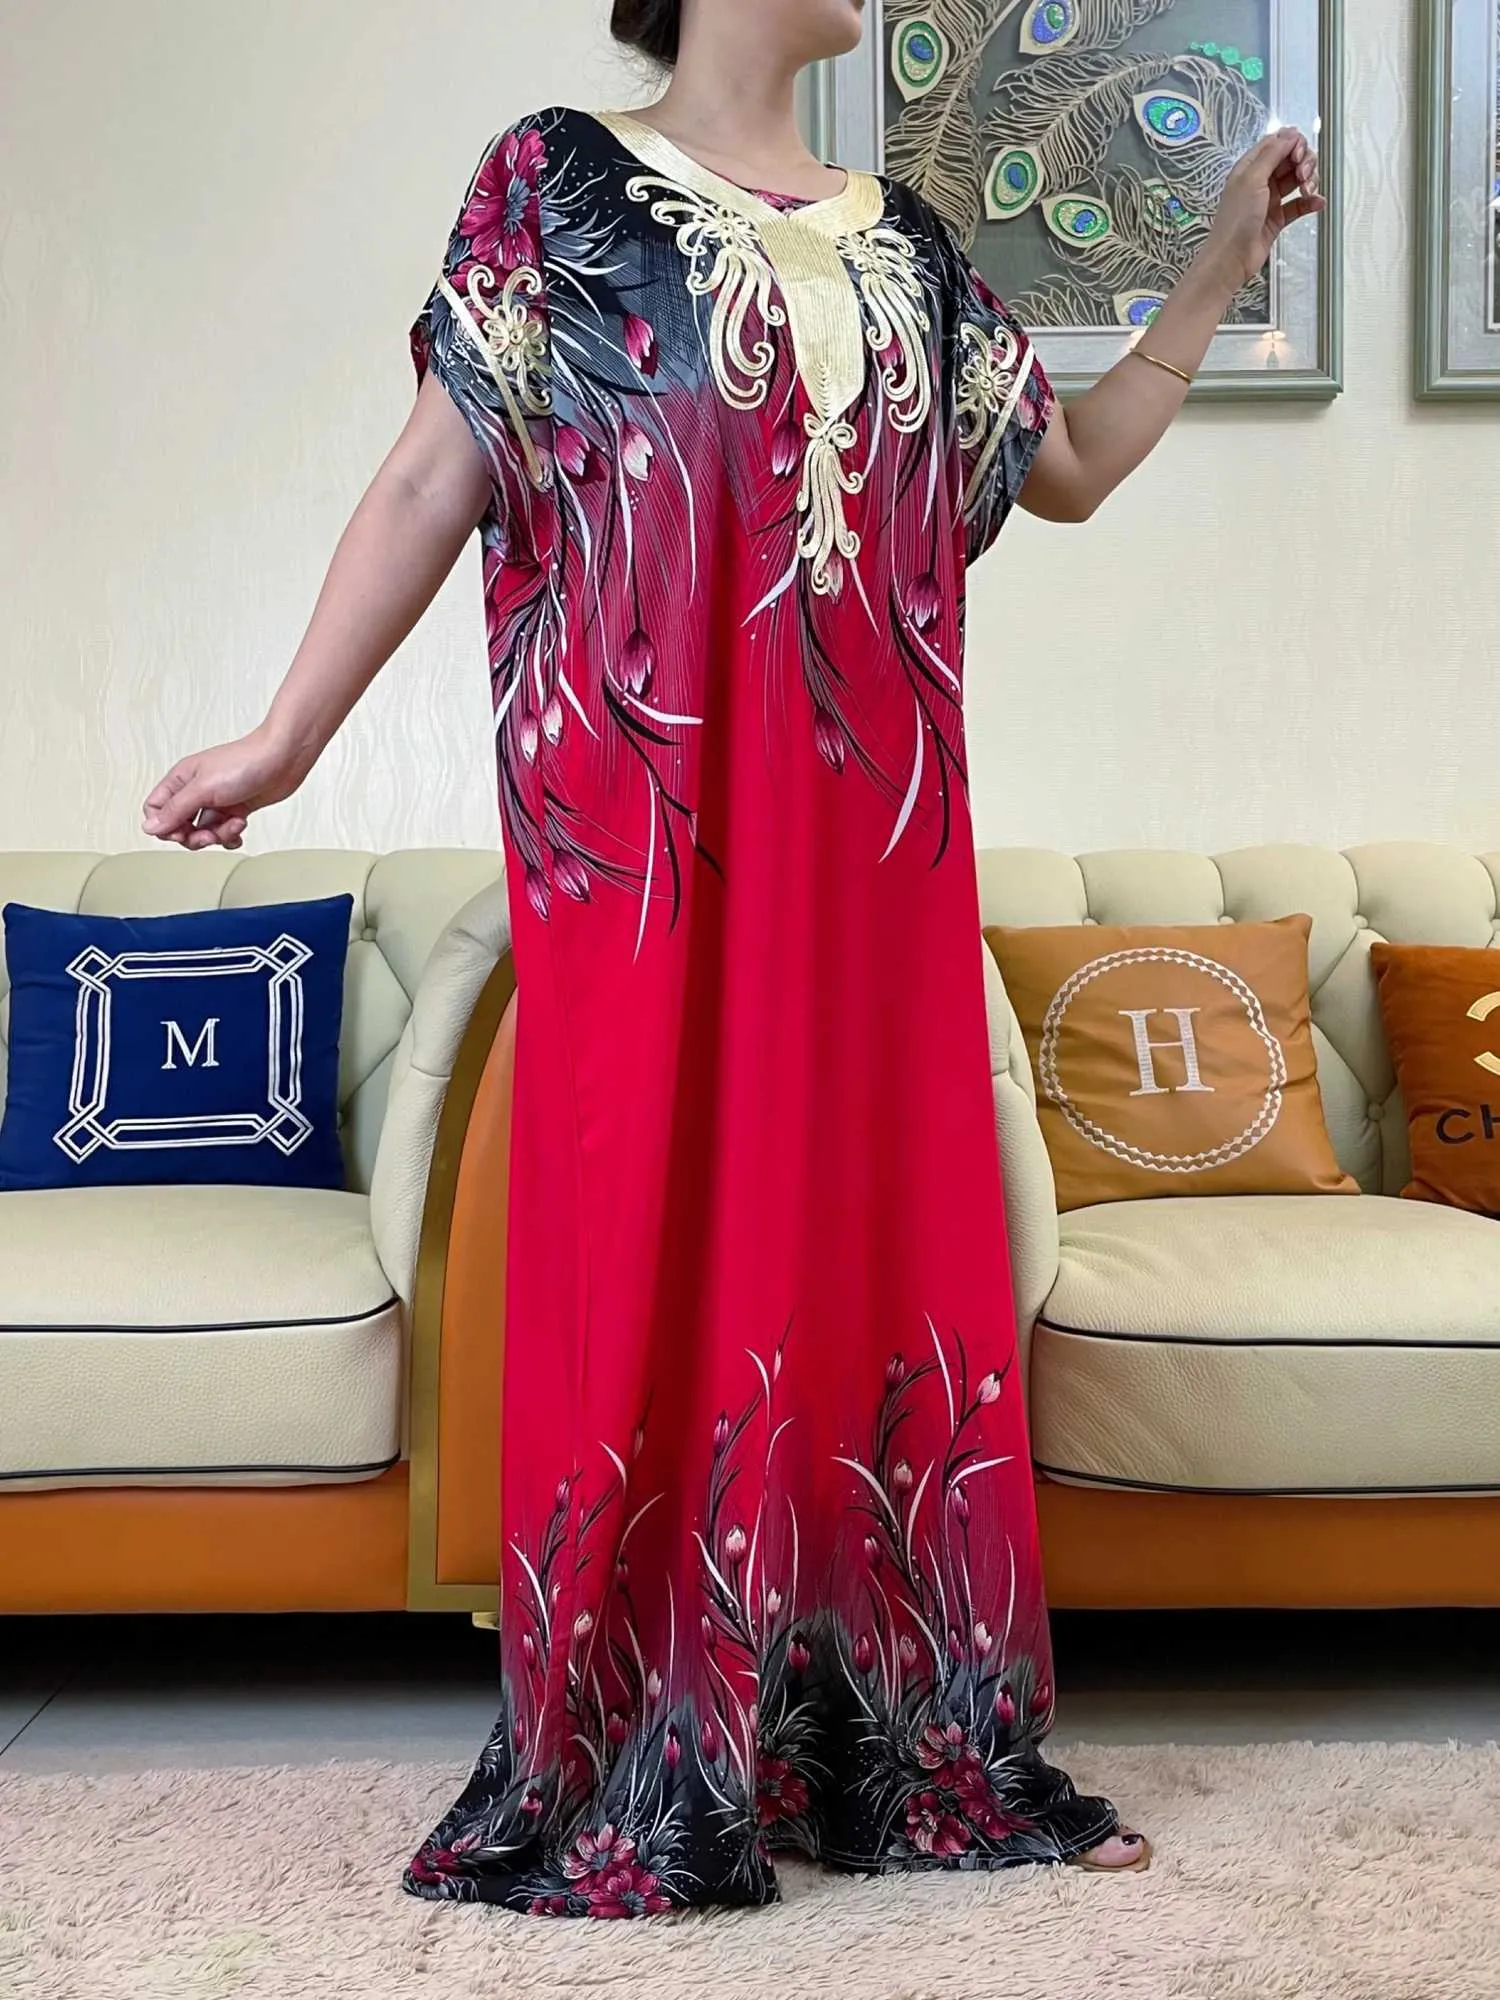 Ropa étnica Última venta caliente Vestido de impresión africana para mujeres musulmanes abaya dubai pavo moda musulmana vestido de algodón de verano ropa islam t240510